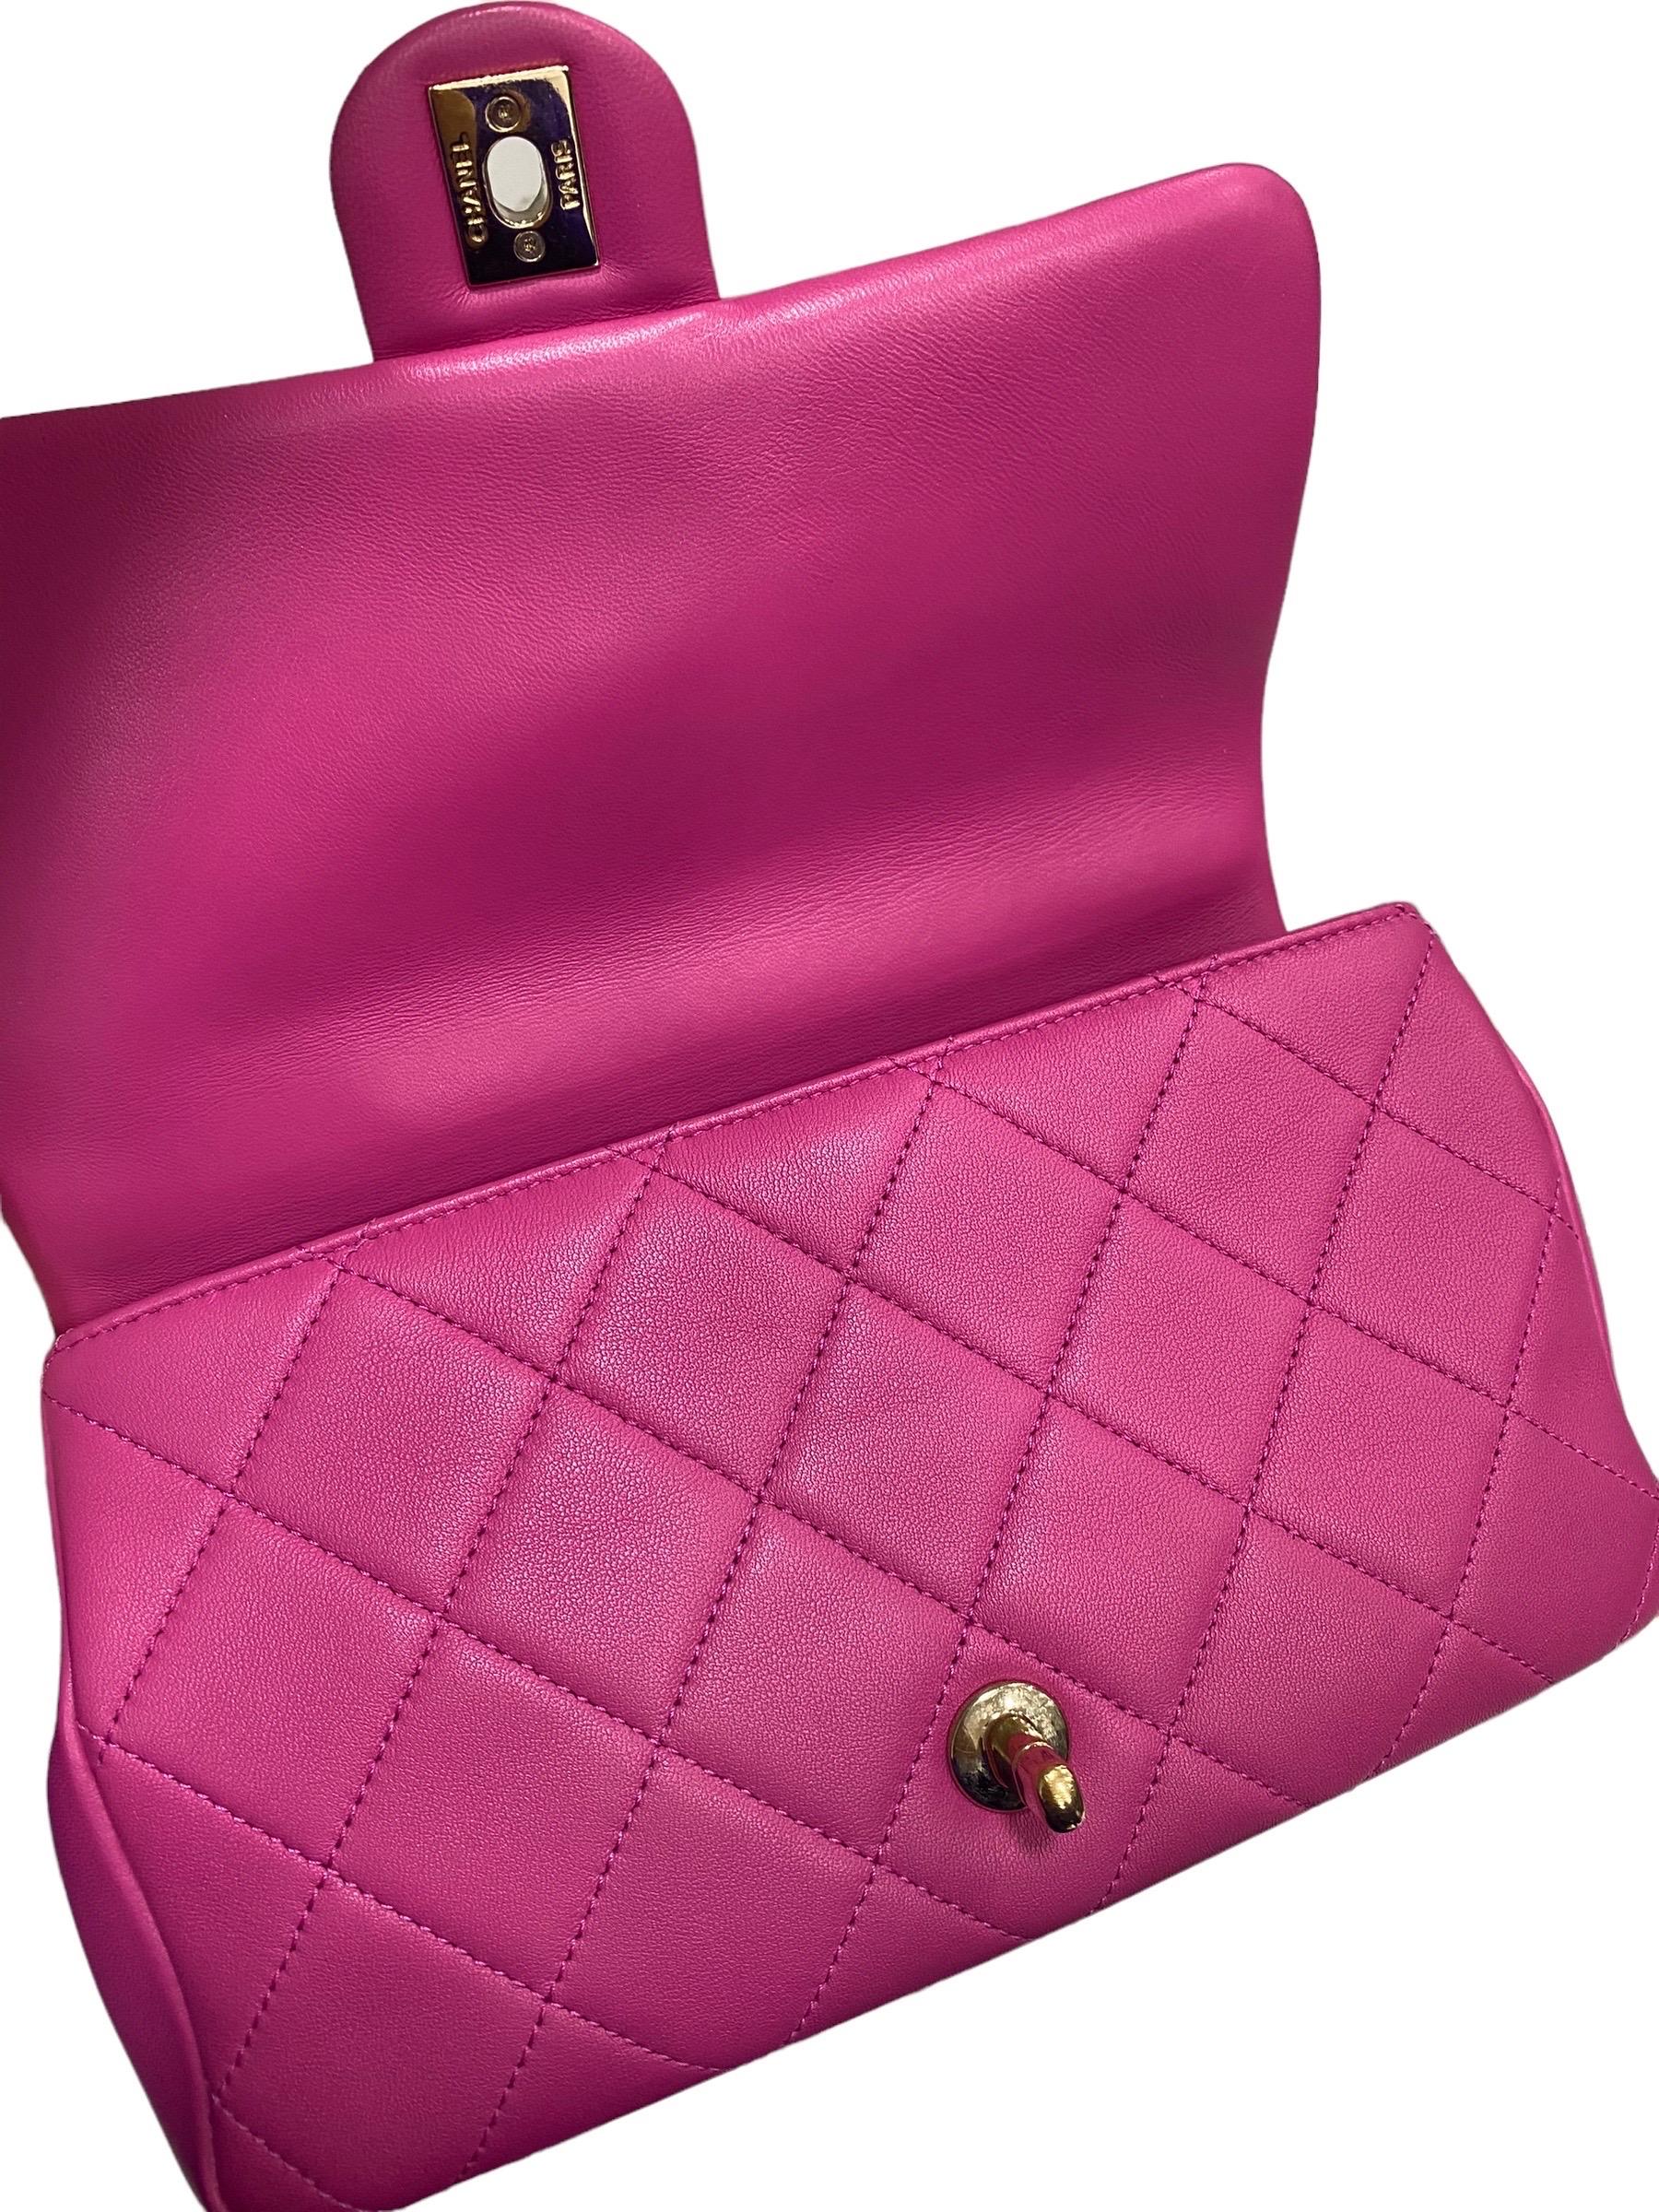 2021 Chanel 19 Pink Shoulder Bag  For Sale 4